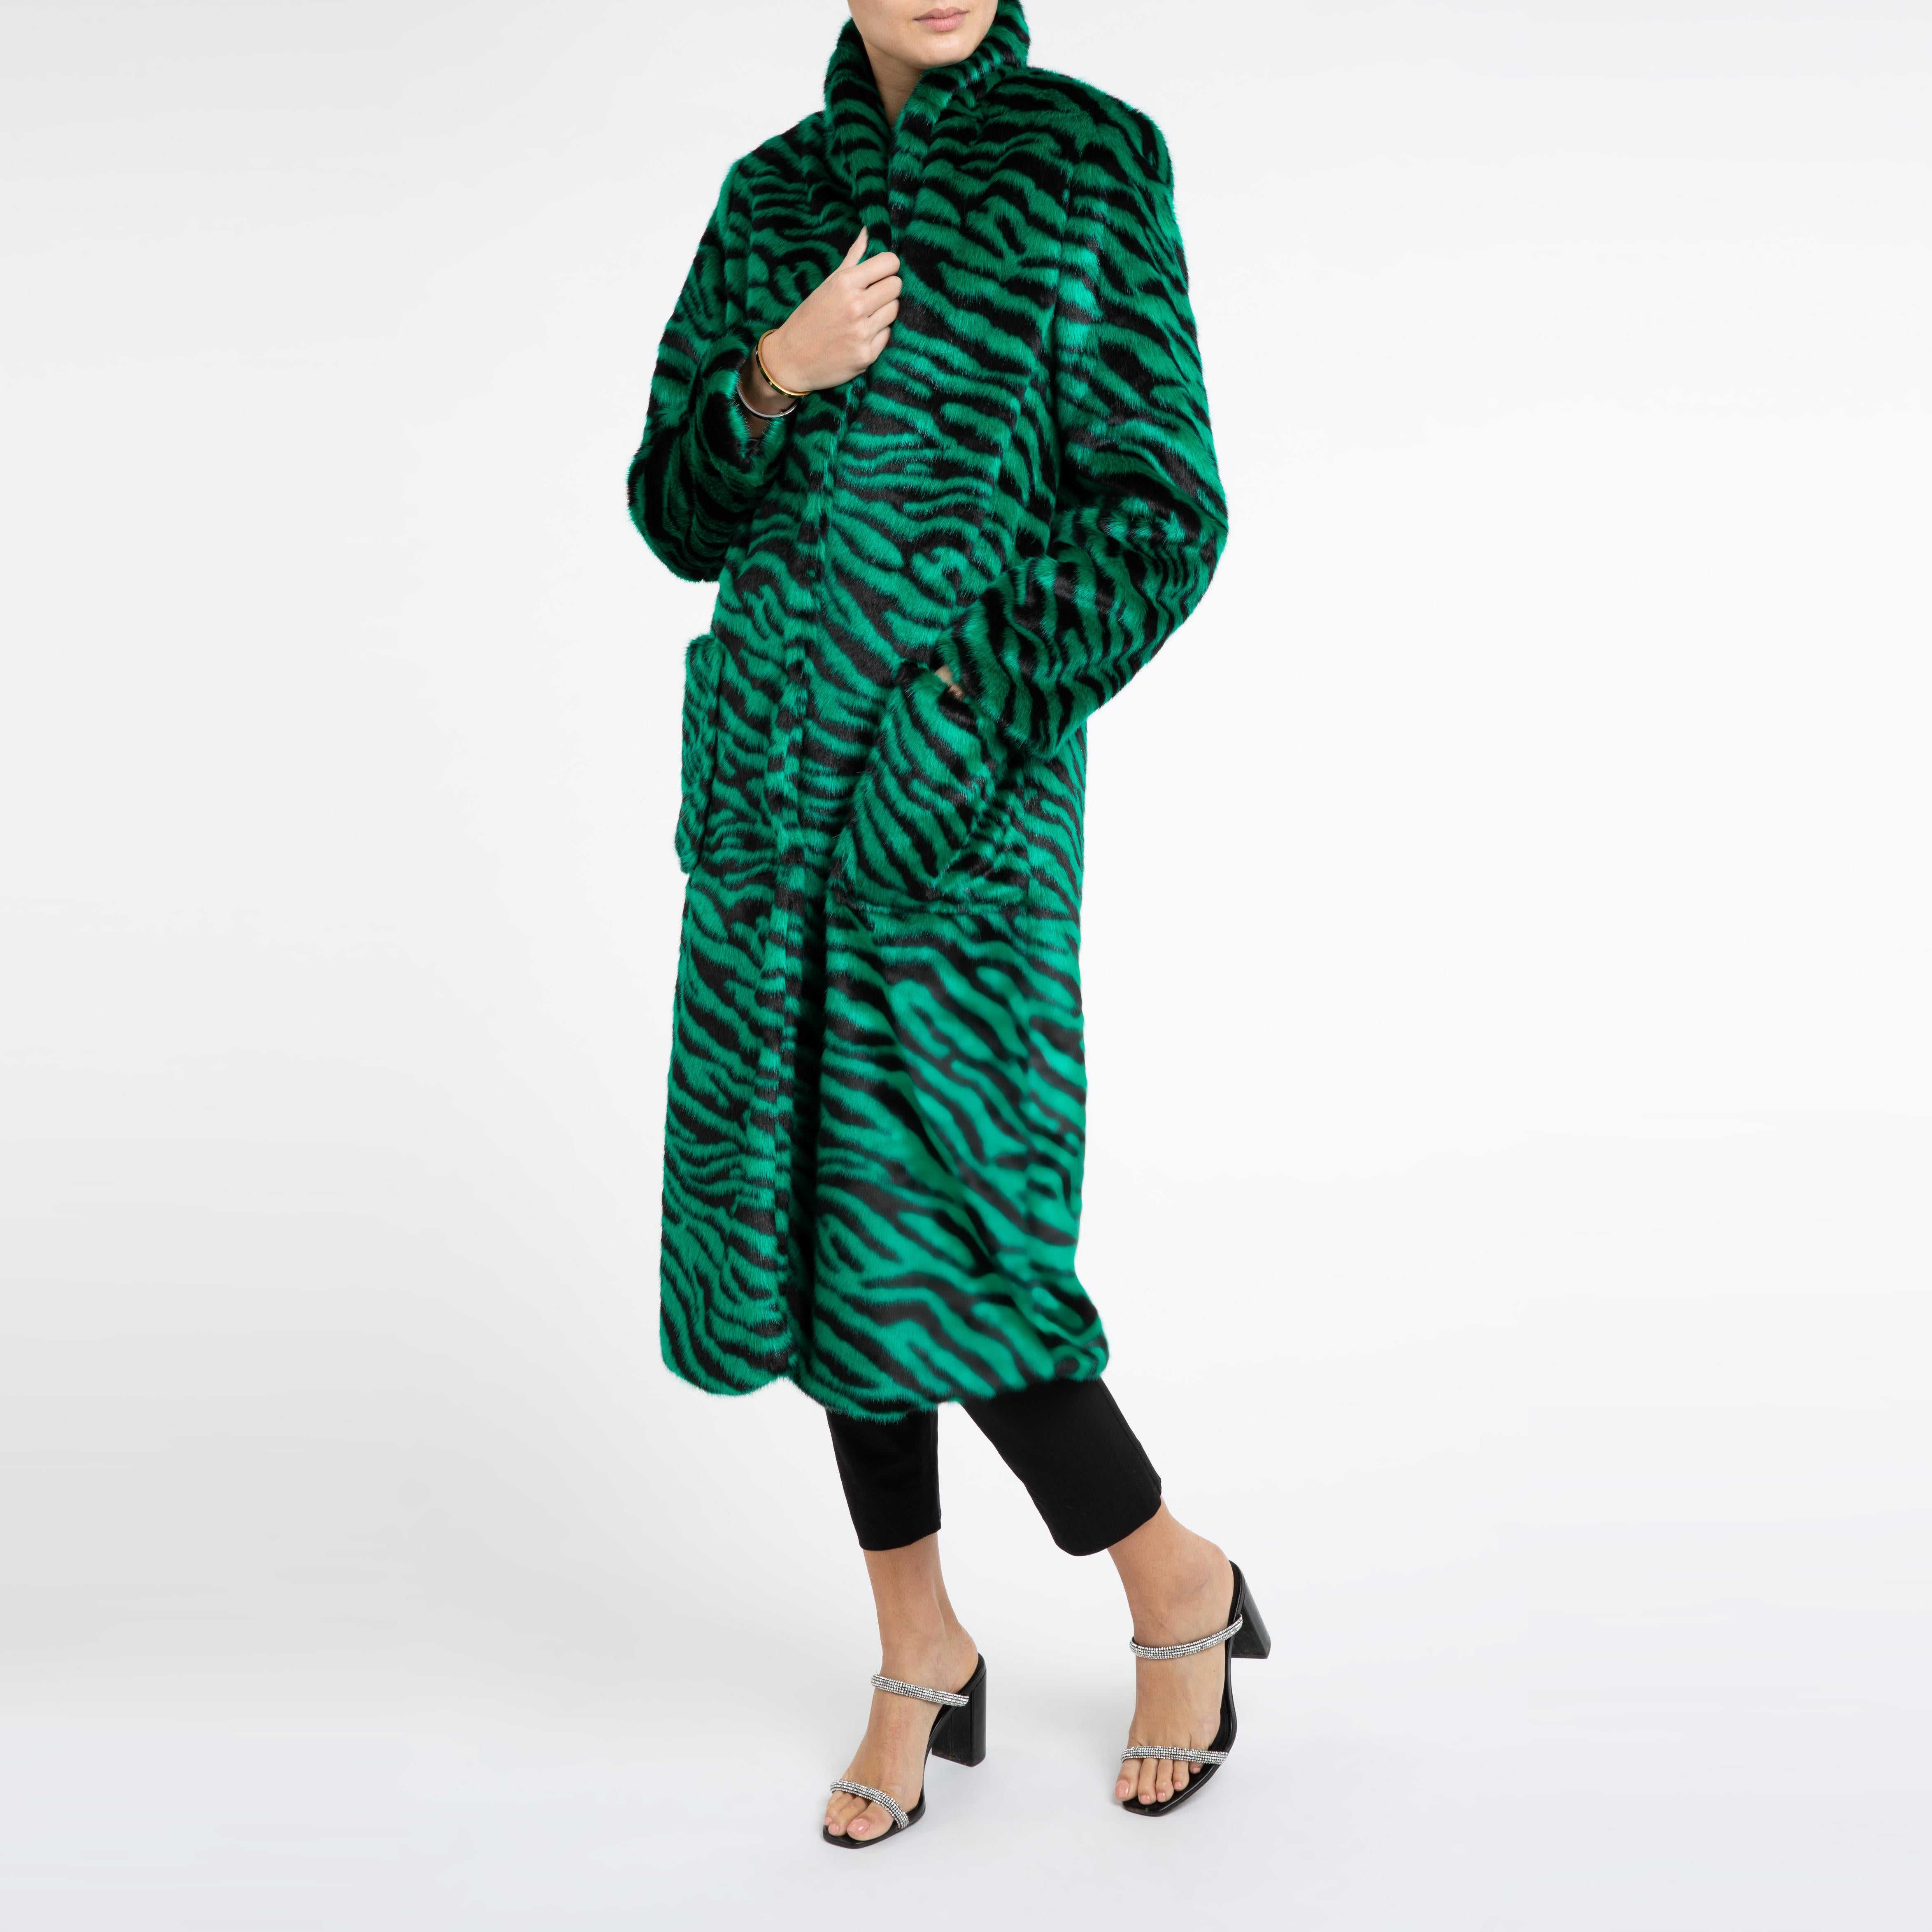 Verheyen London Esmeralda Faux Fur Coat in Emerald Green Zebra Print size uk 8 4